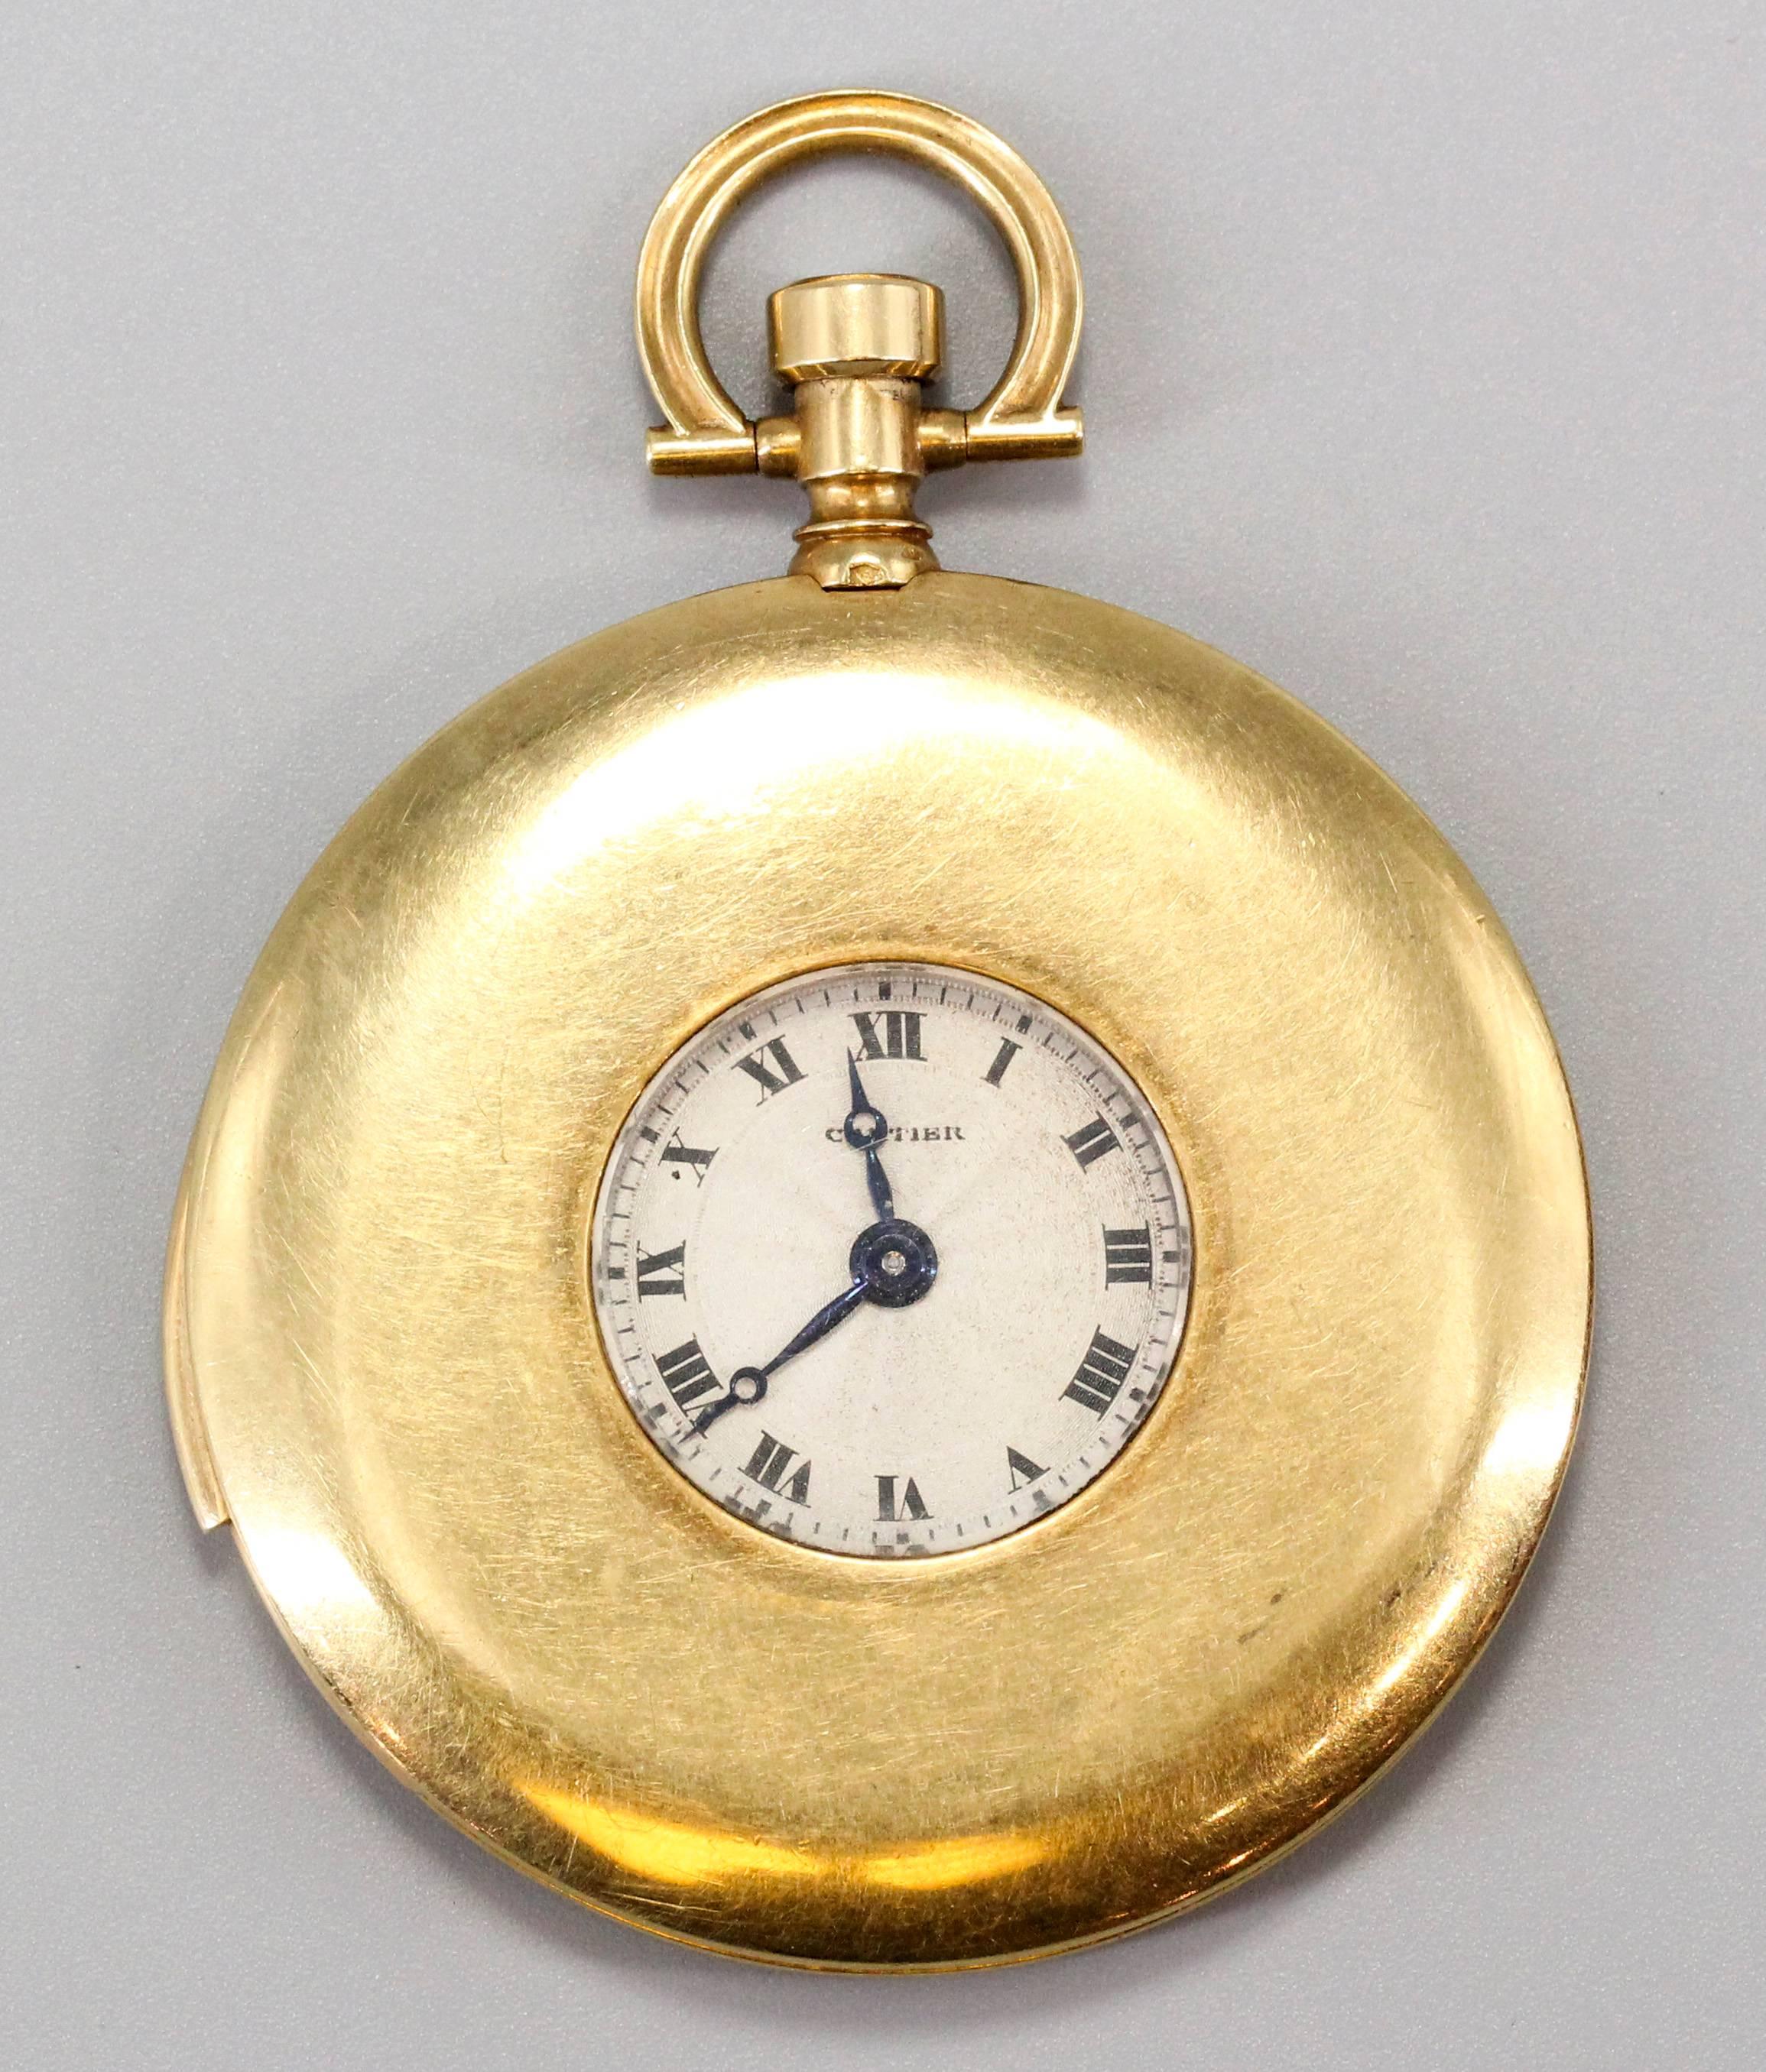 Sehr schöne und seltene 18k Gelbgold Minutenrepetition Taschenuhr von Cartier, um 1910. Sie zeichnet sich durch ein sehr schlankes Gehäuse, einen Minutenrepetitionsmechanismus von EWC (European Watch & Co.) und eine federbelastete